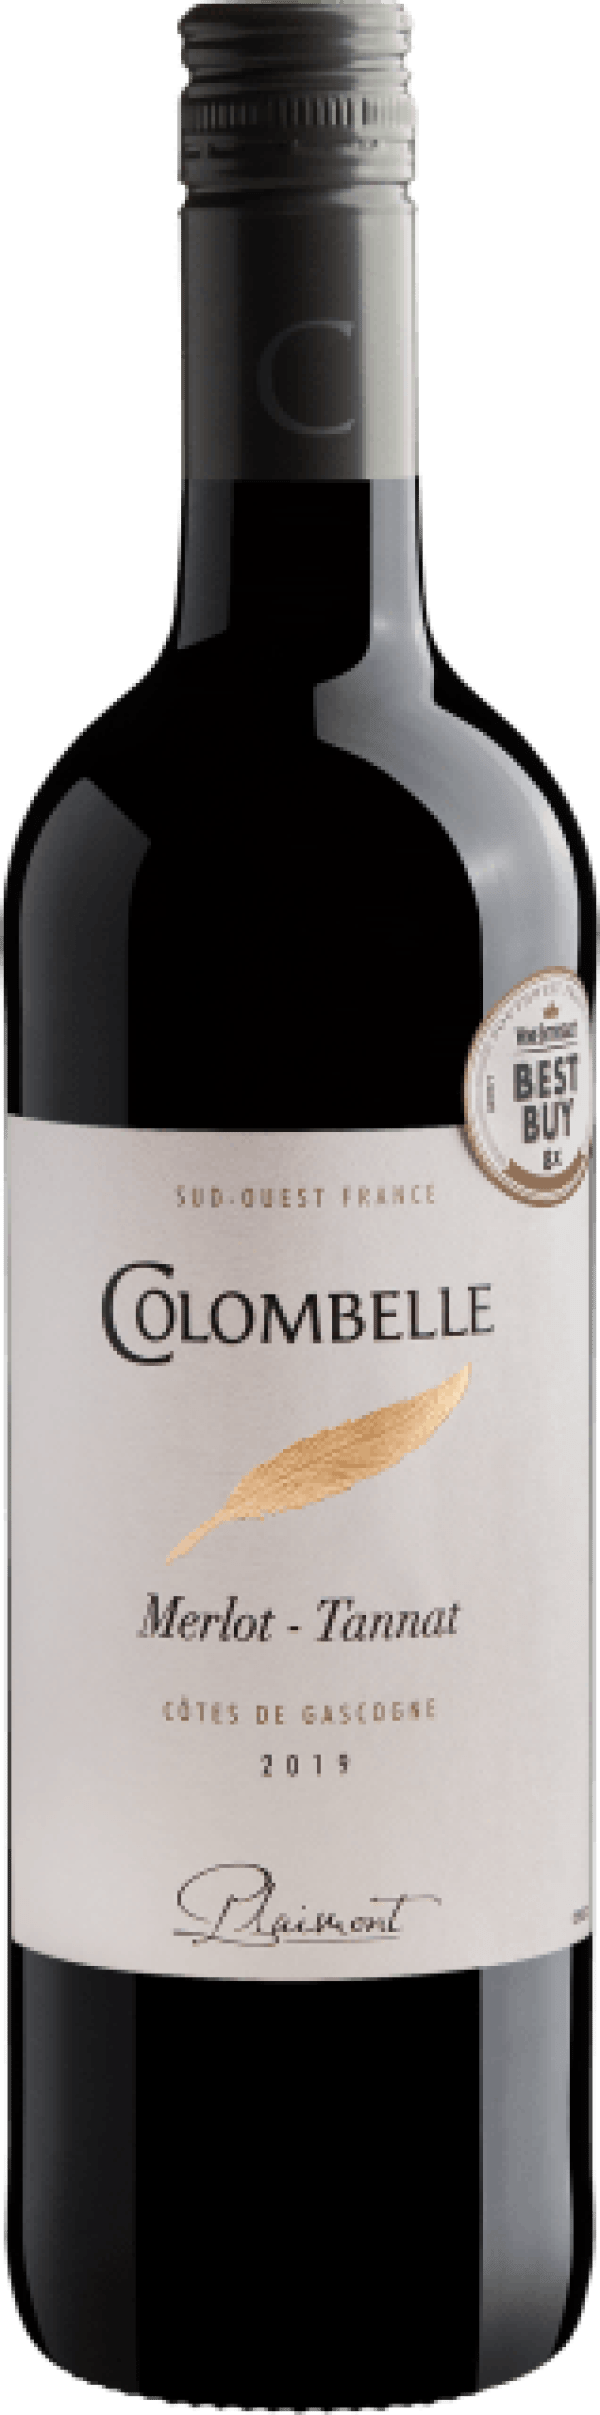 Colombelle Merlot-Tannat Côtes de Gascogne IGP 2019